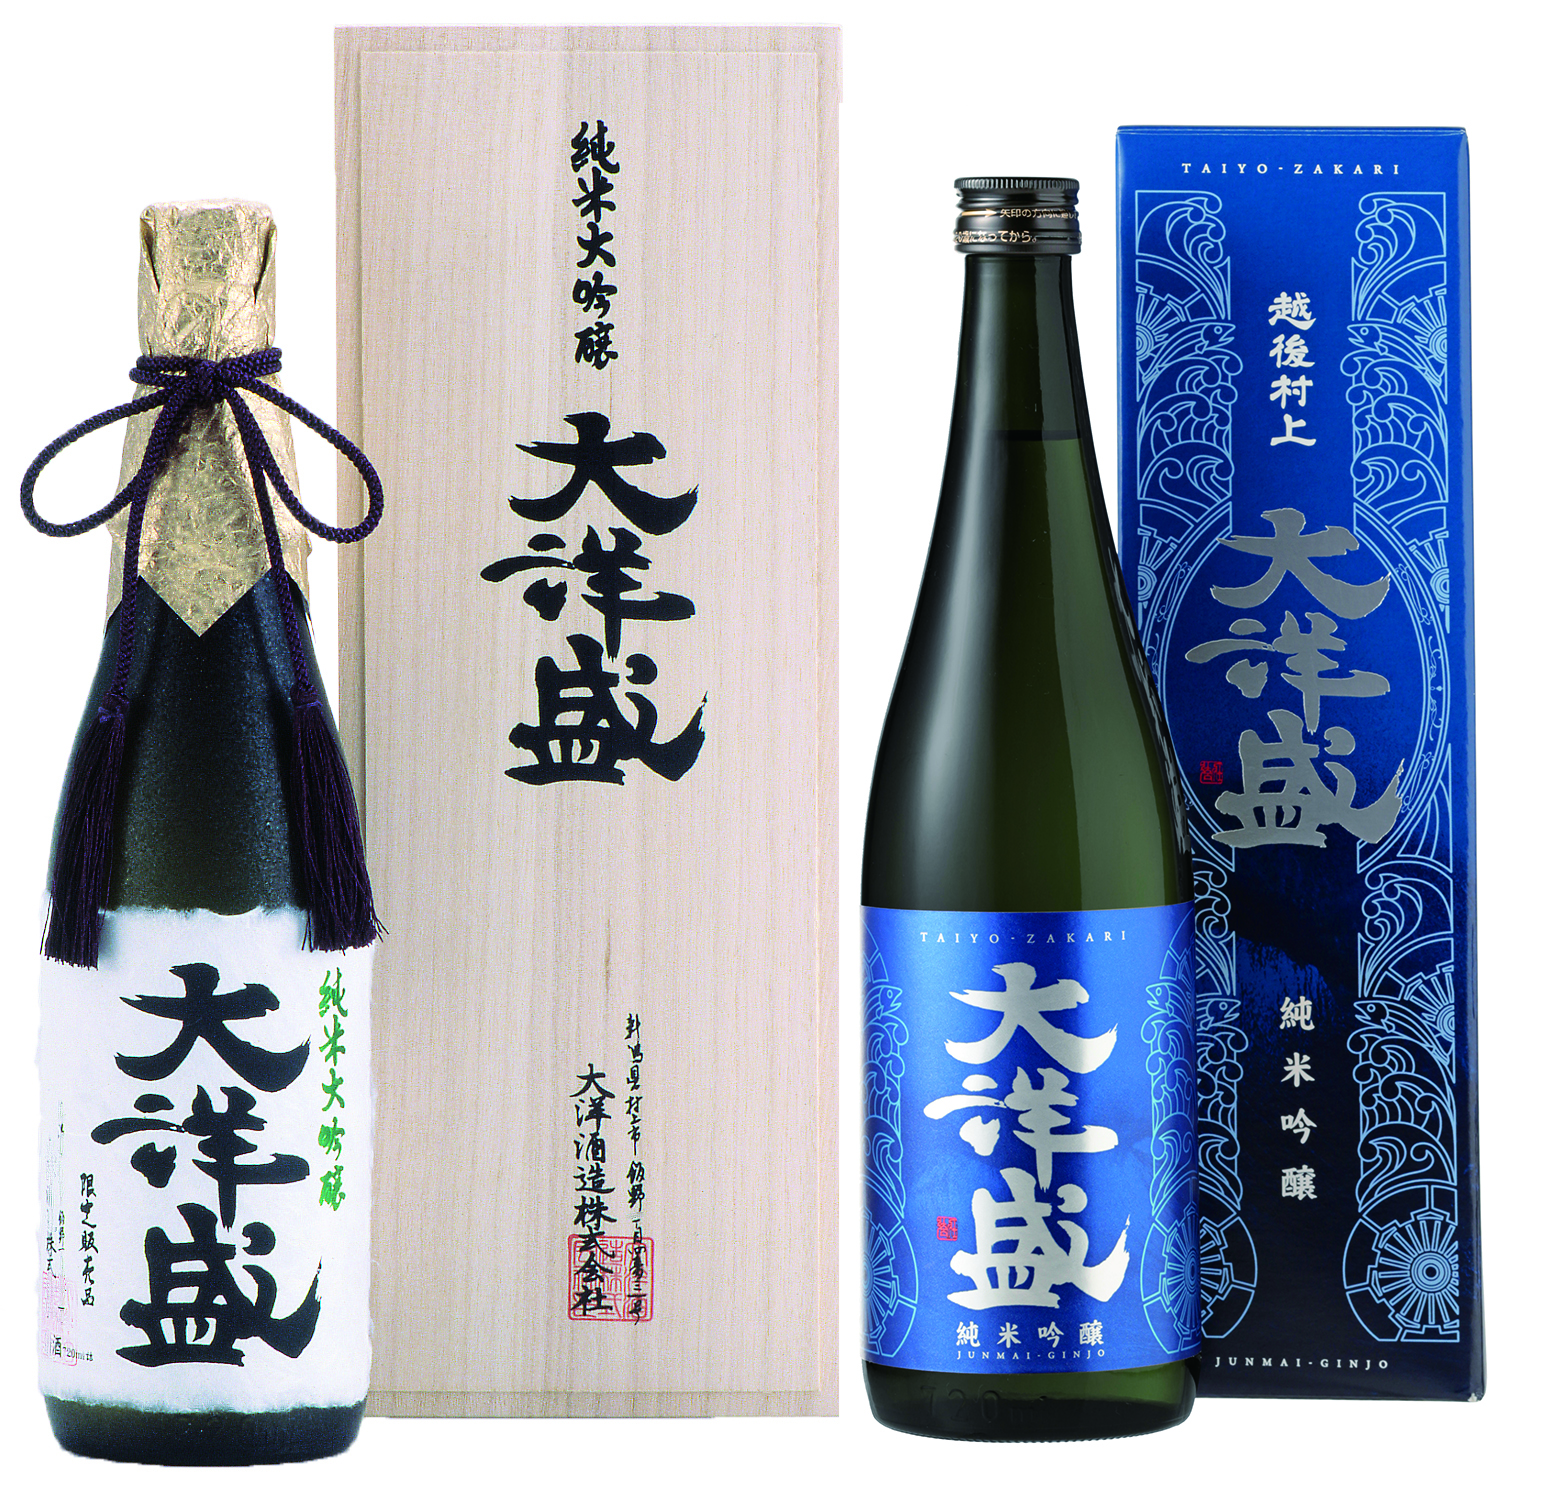 超厳選!!大洋盛のフルーティー日本酒 飲み比べセット 純米大吟醸・純米